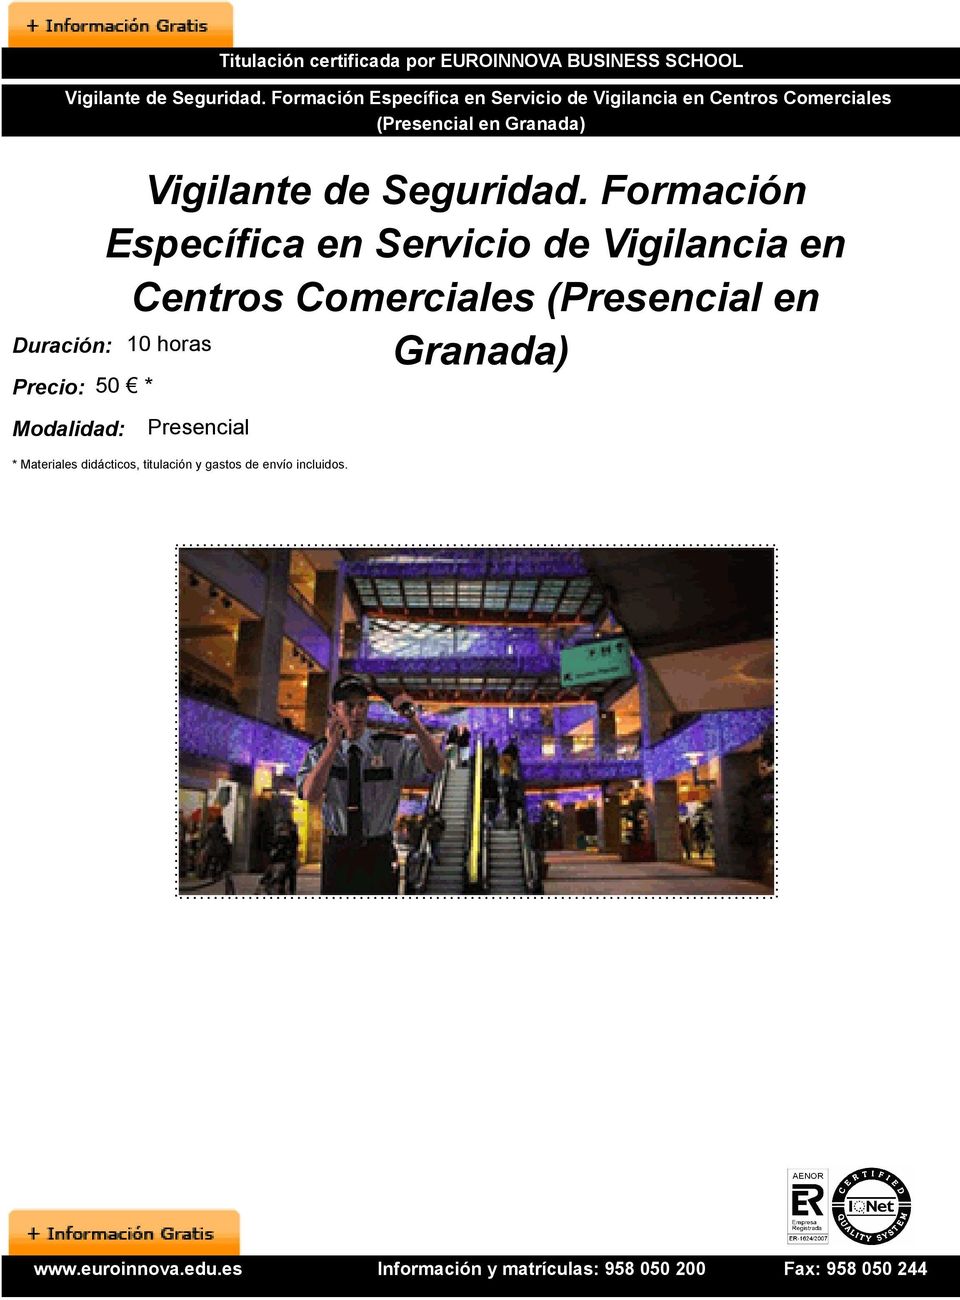 Formación Específica en Servicio de Vigilancia en Centros Comerciales (Presencial en Granada)